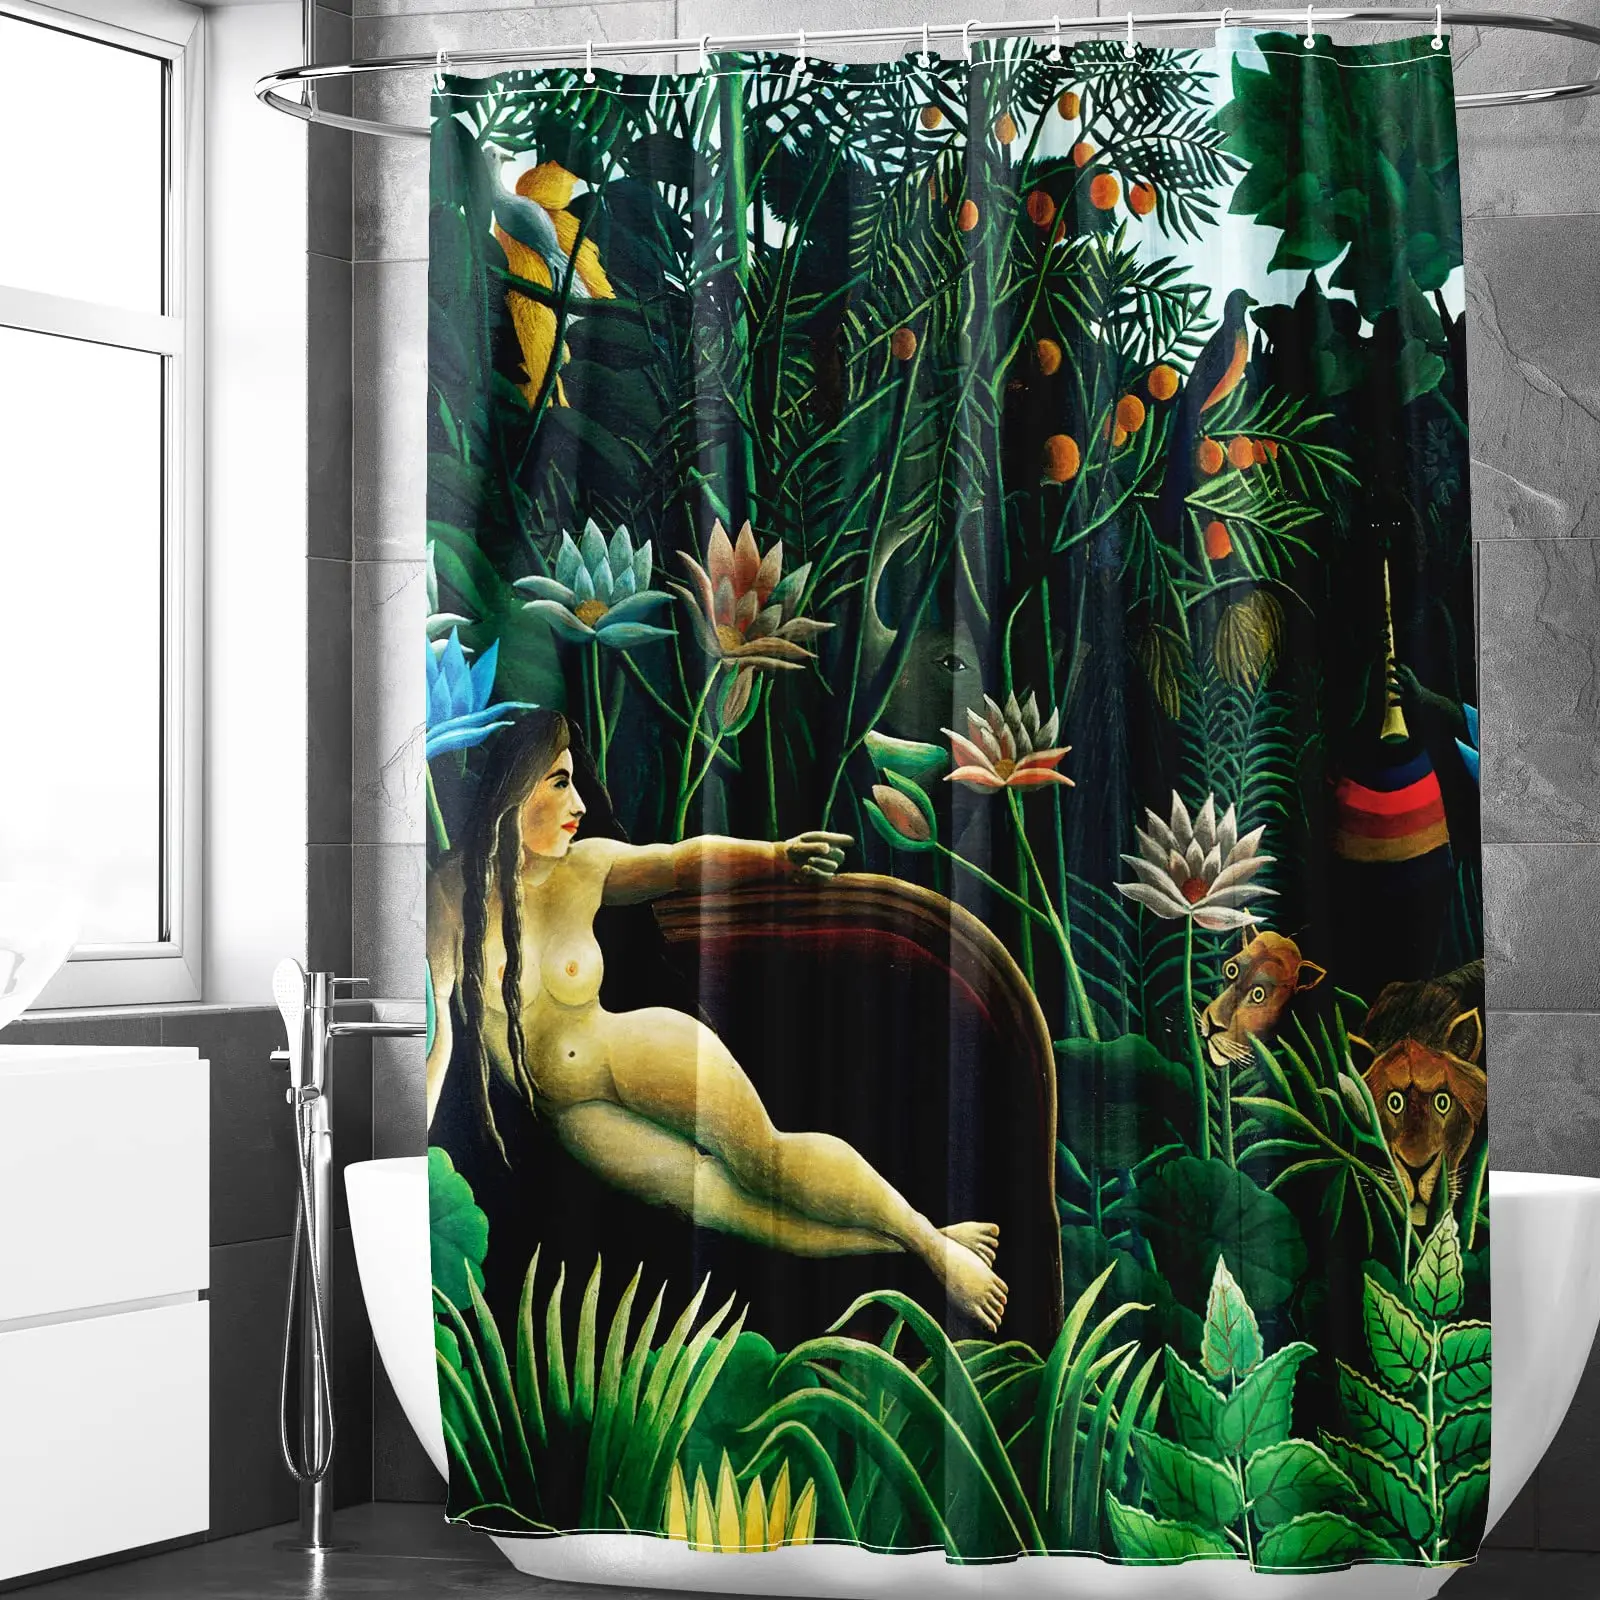 

Тропический пейзаж, жизнь, Классическая картина, занавеска для душа, абстрактное искусство, дизайн Анри Руссо, водонепроницаемая тканевая занавеска для ванной комнаты